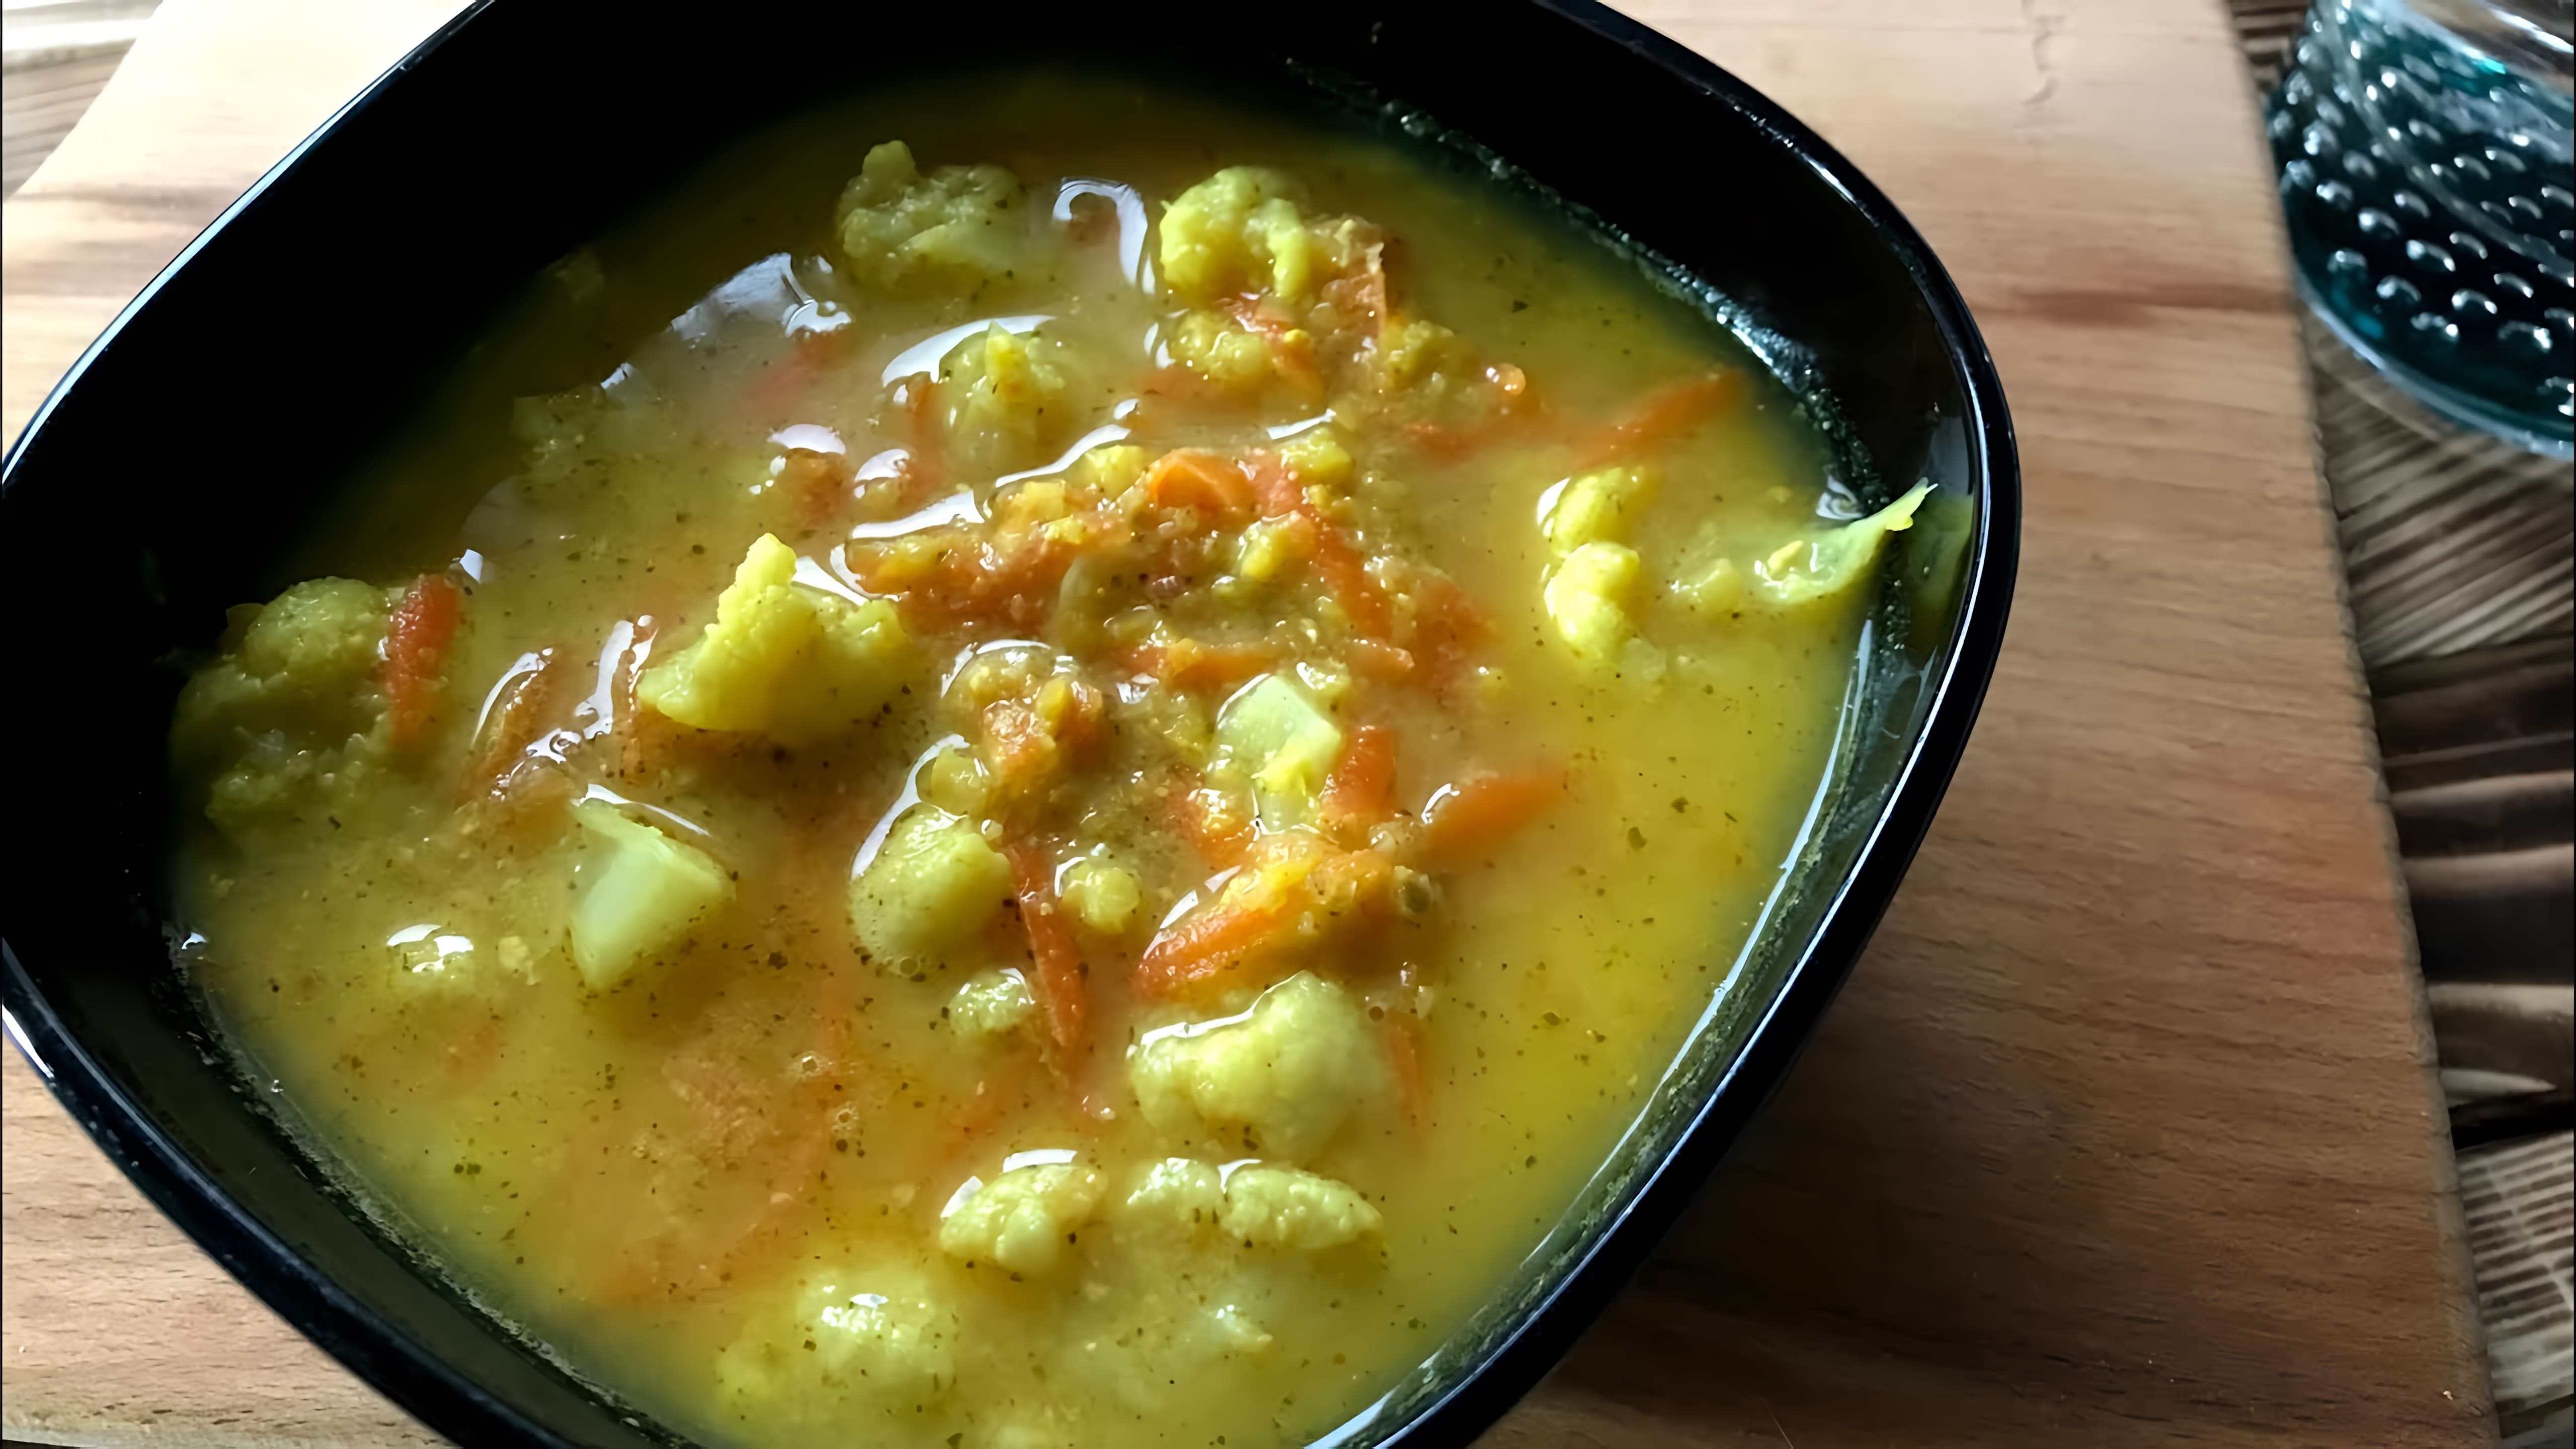 В этом видео демонстрируется рецепт супа из молочной сыворотки